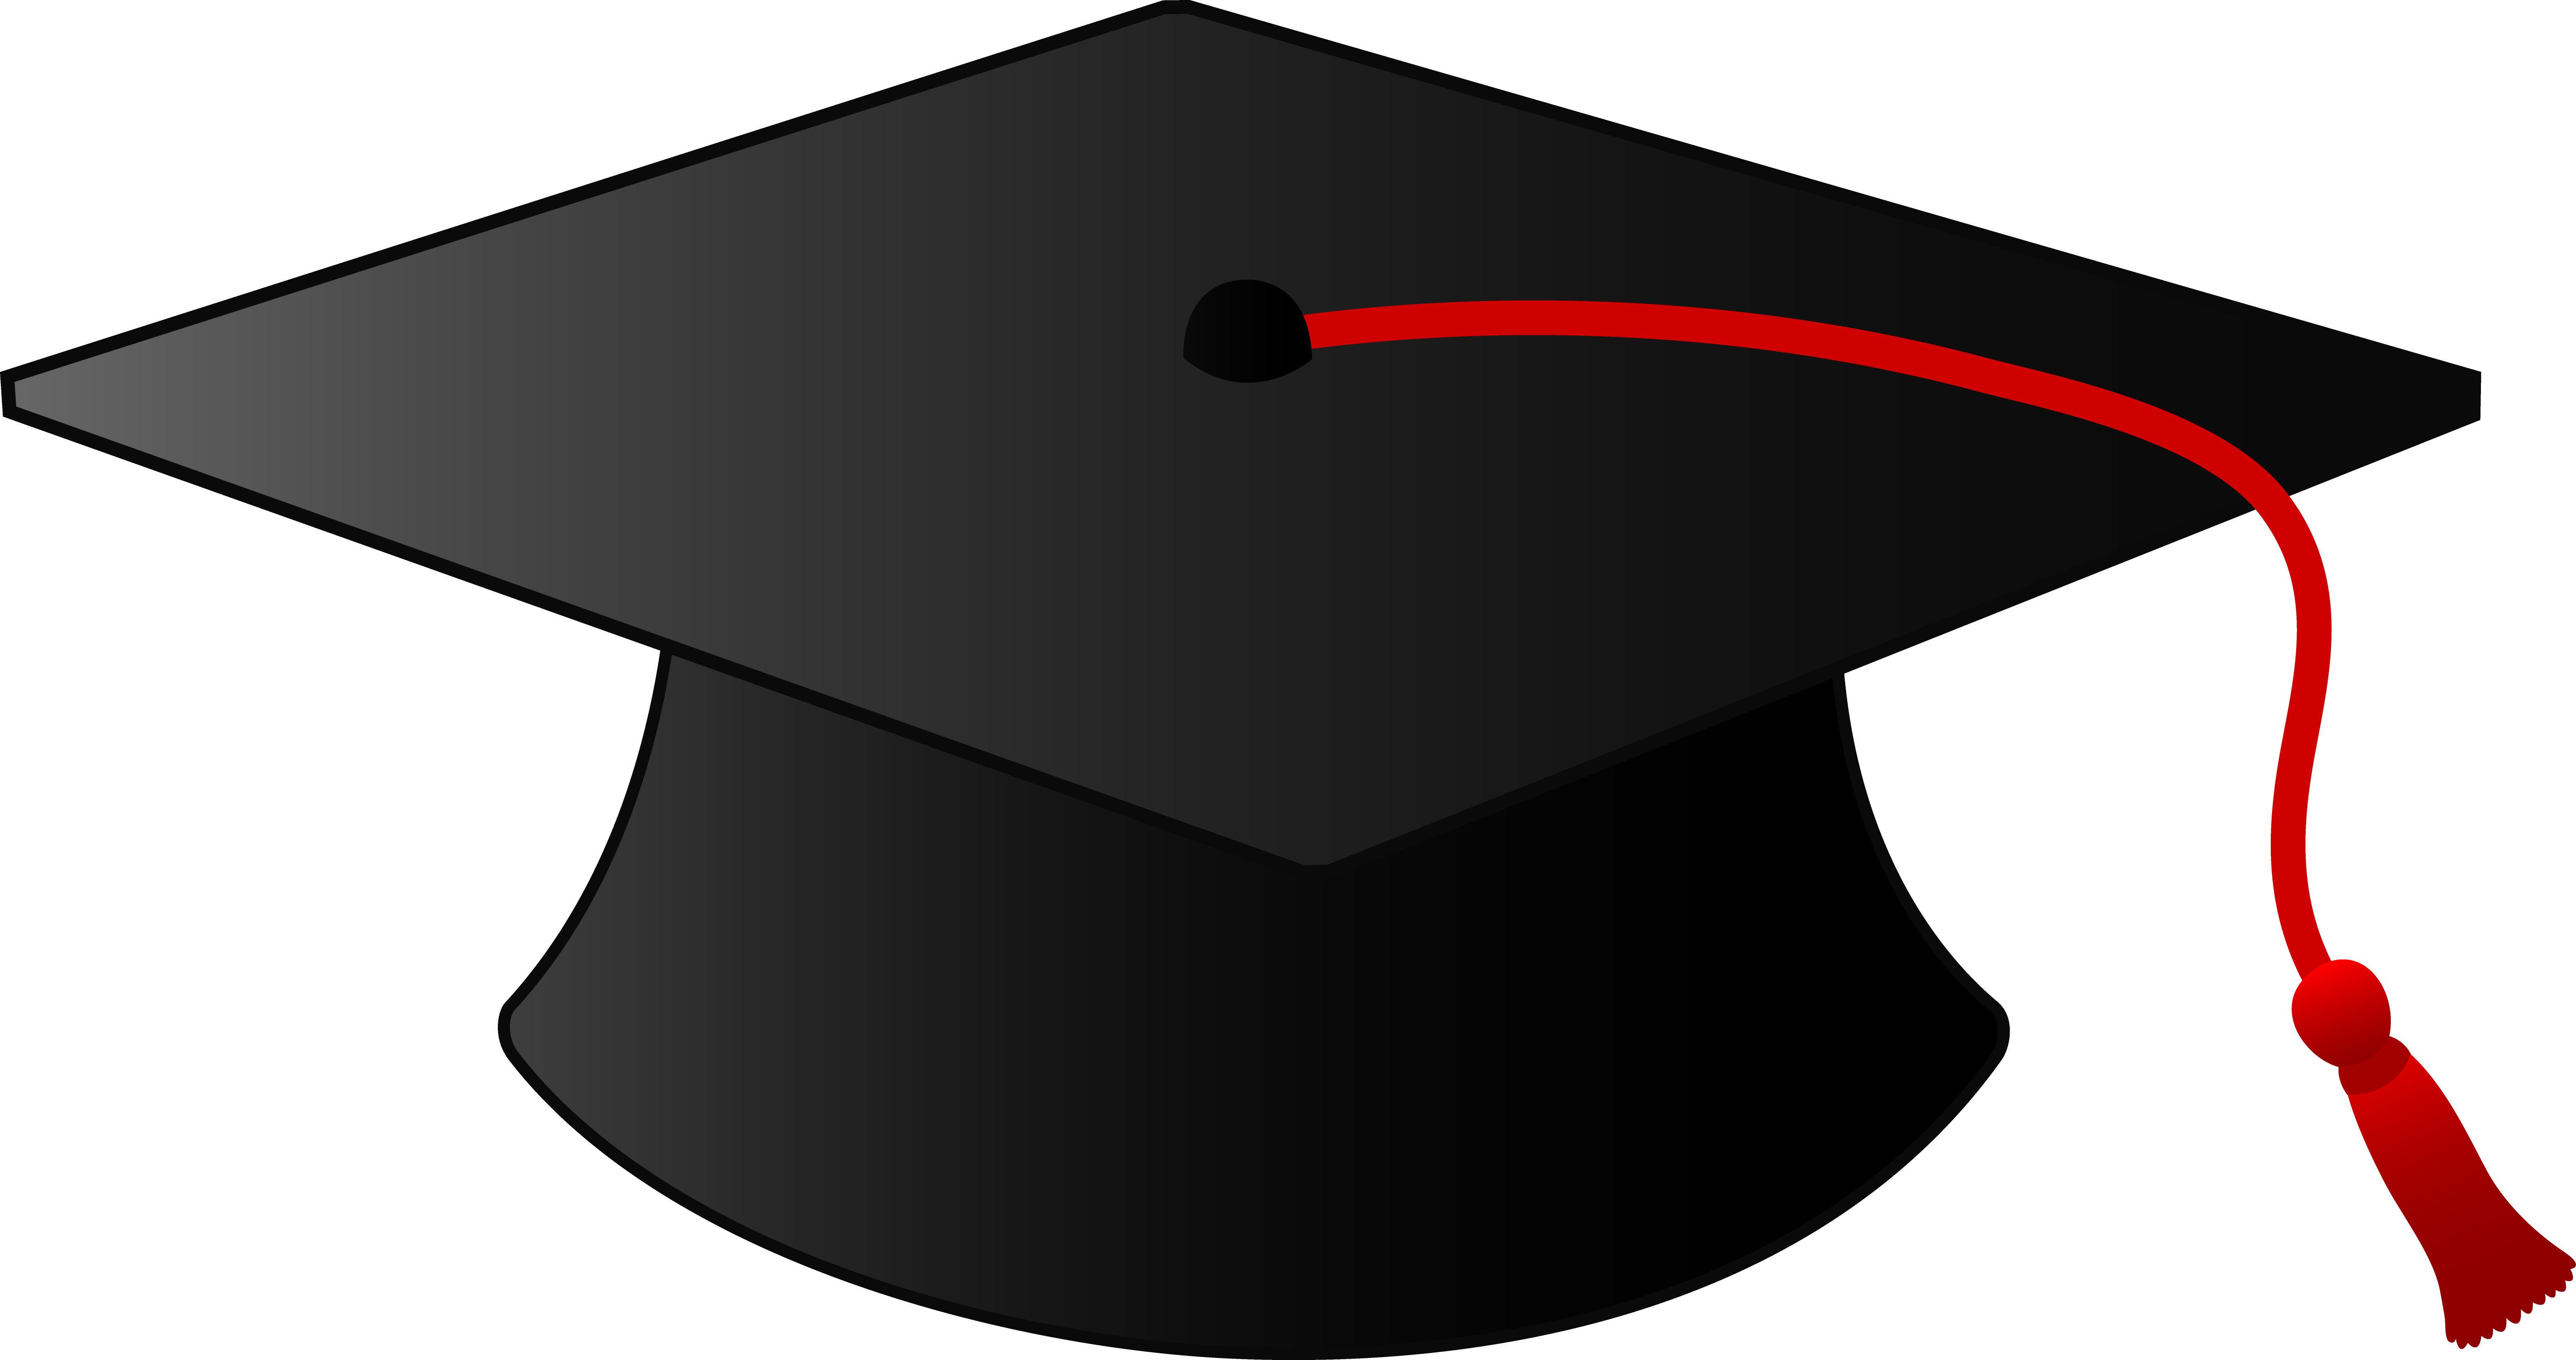 Graduation cap clipart free